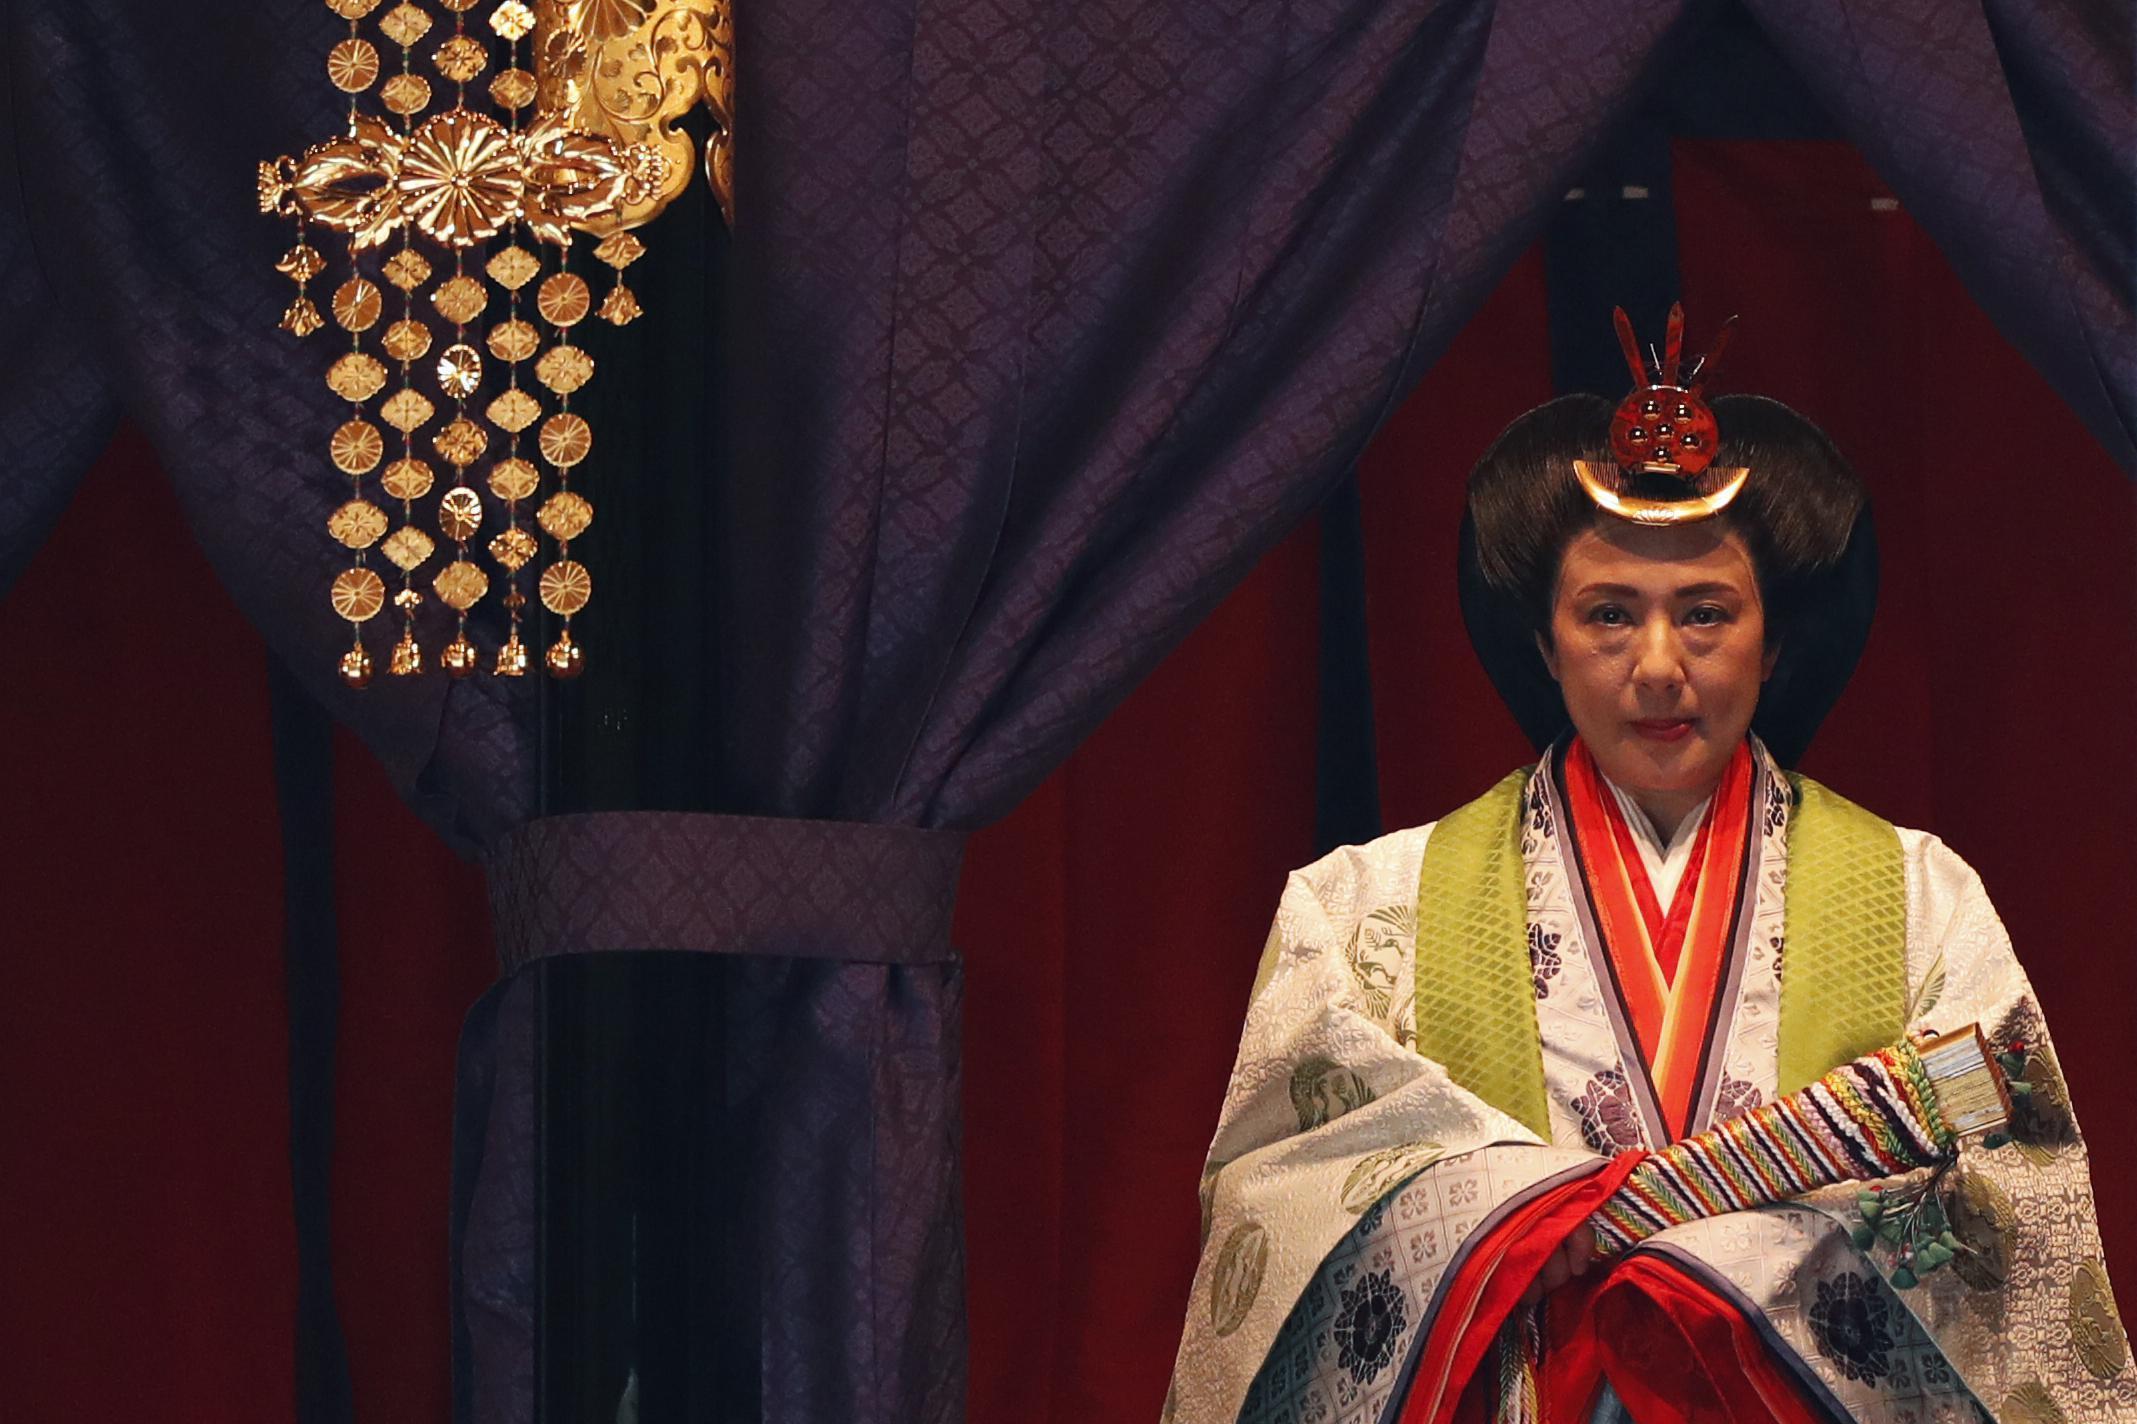 Japonyanın 126. İmparatoru Naruhito, törenle tahta çıktı